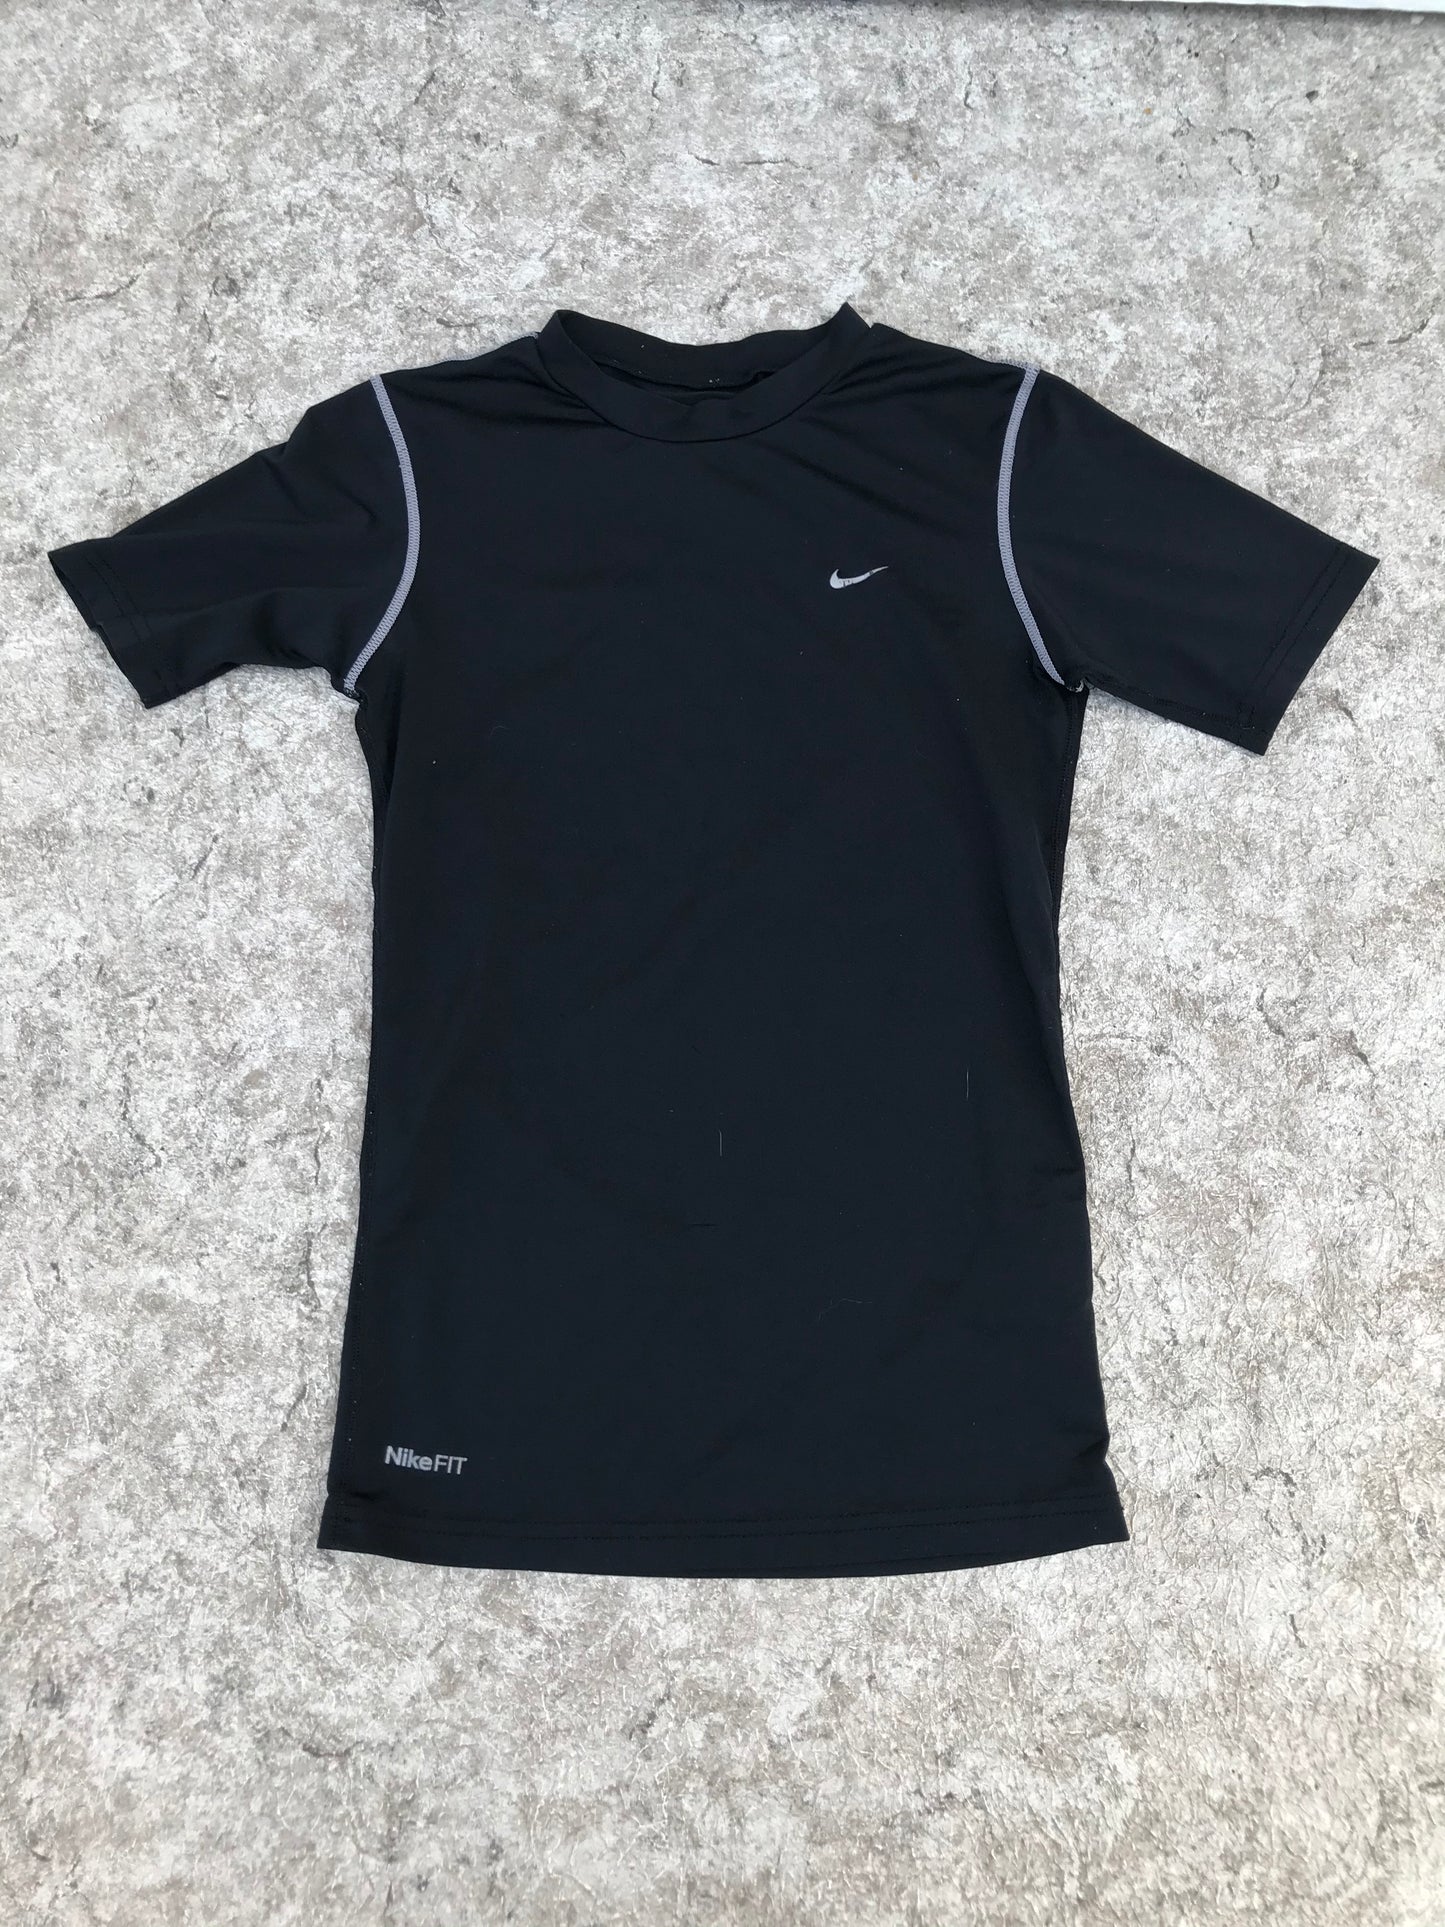 Hockey Base Layer Shirt Child Size Junior Large T 8-10 Nike Black